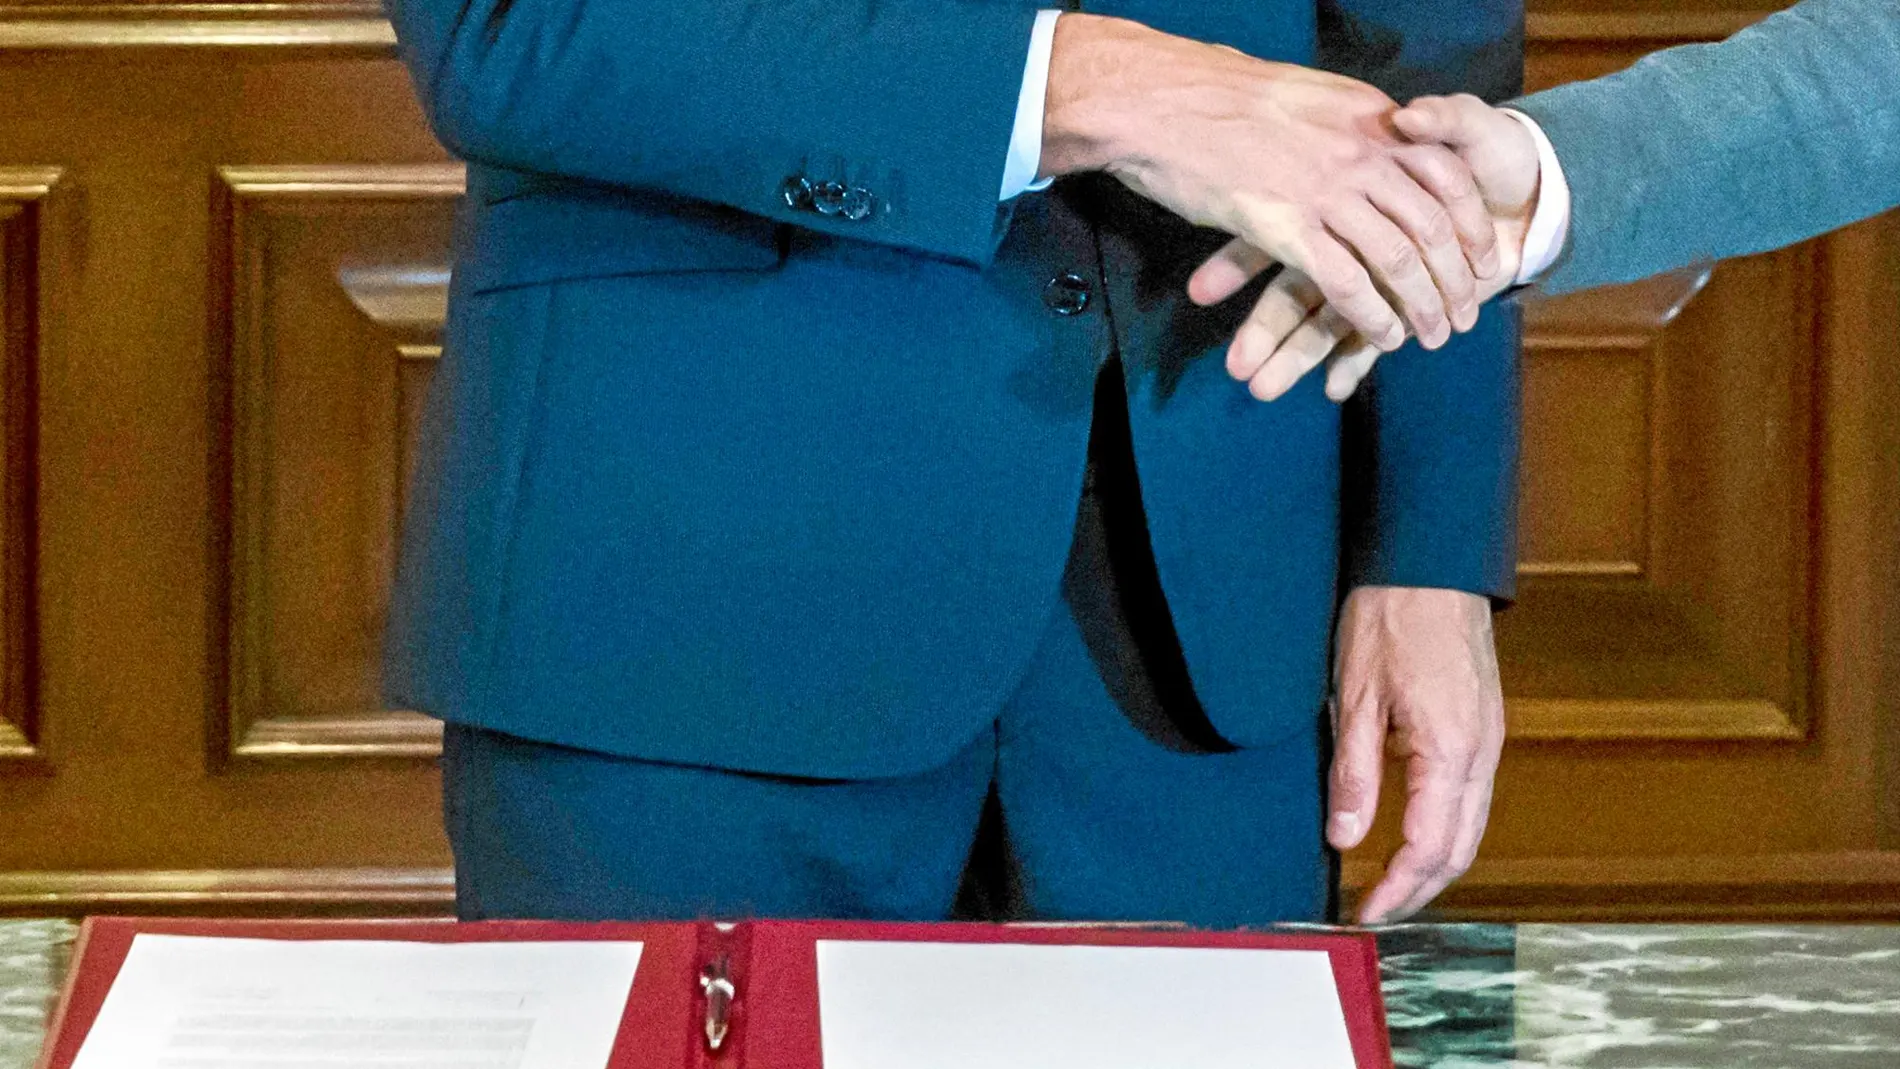 Pedro Sánchez y Pablo Iglesias firmaron ayer un preacuerdo para forjar un gobierno de coalición que el Congreso deberá validar. Foto: Alberto R. Roldán